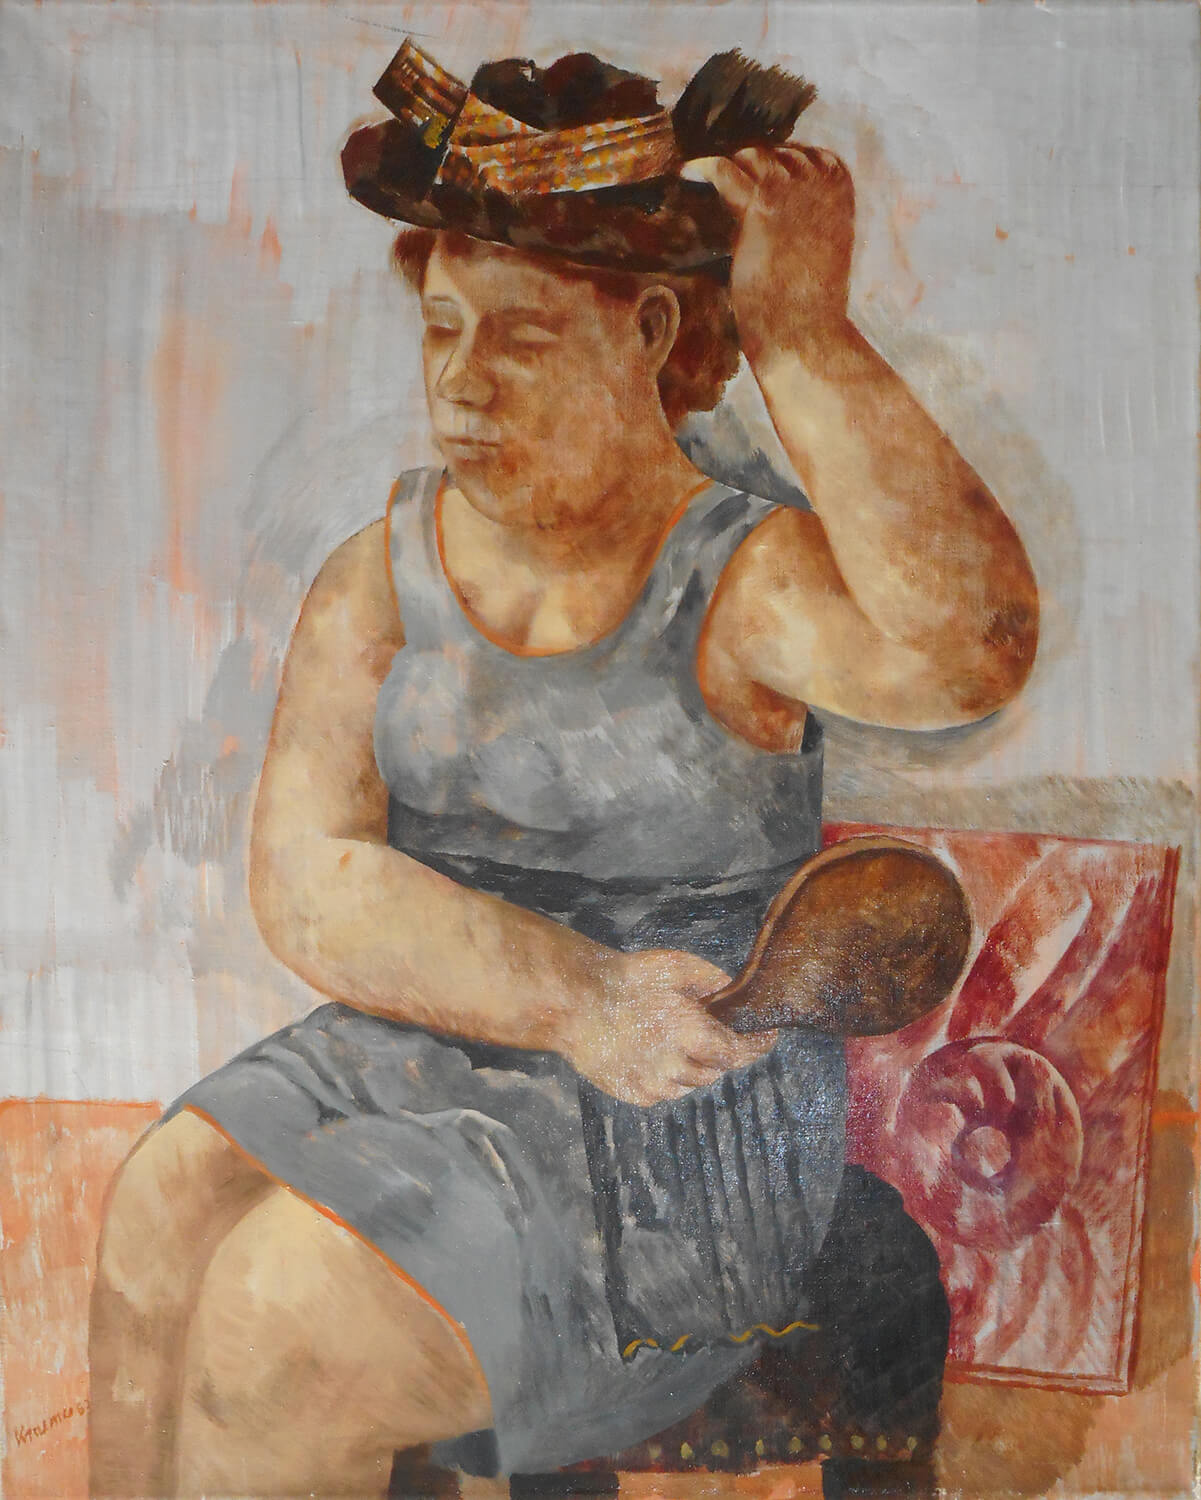 Dieter Kraemer, Frau mit Hut und Spiegel, 1963, Öl auf Leinwand, 100 x 80 cm